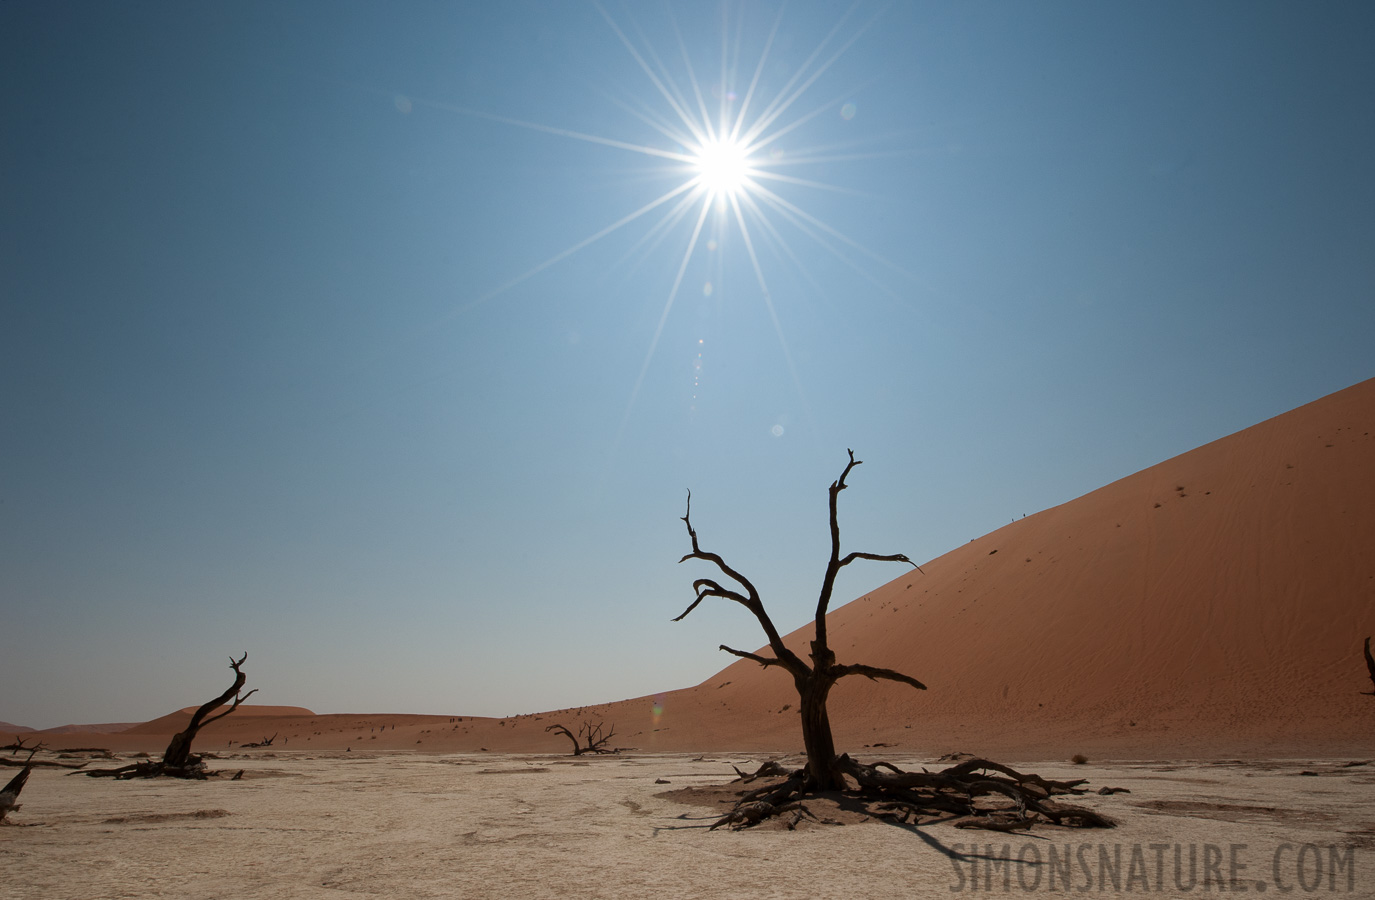 Namib-Naukluft National Park [14 mm, 1/640 sec at f / 22, ISO 400]